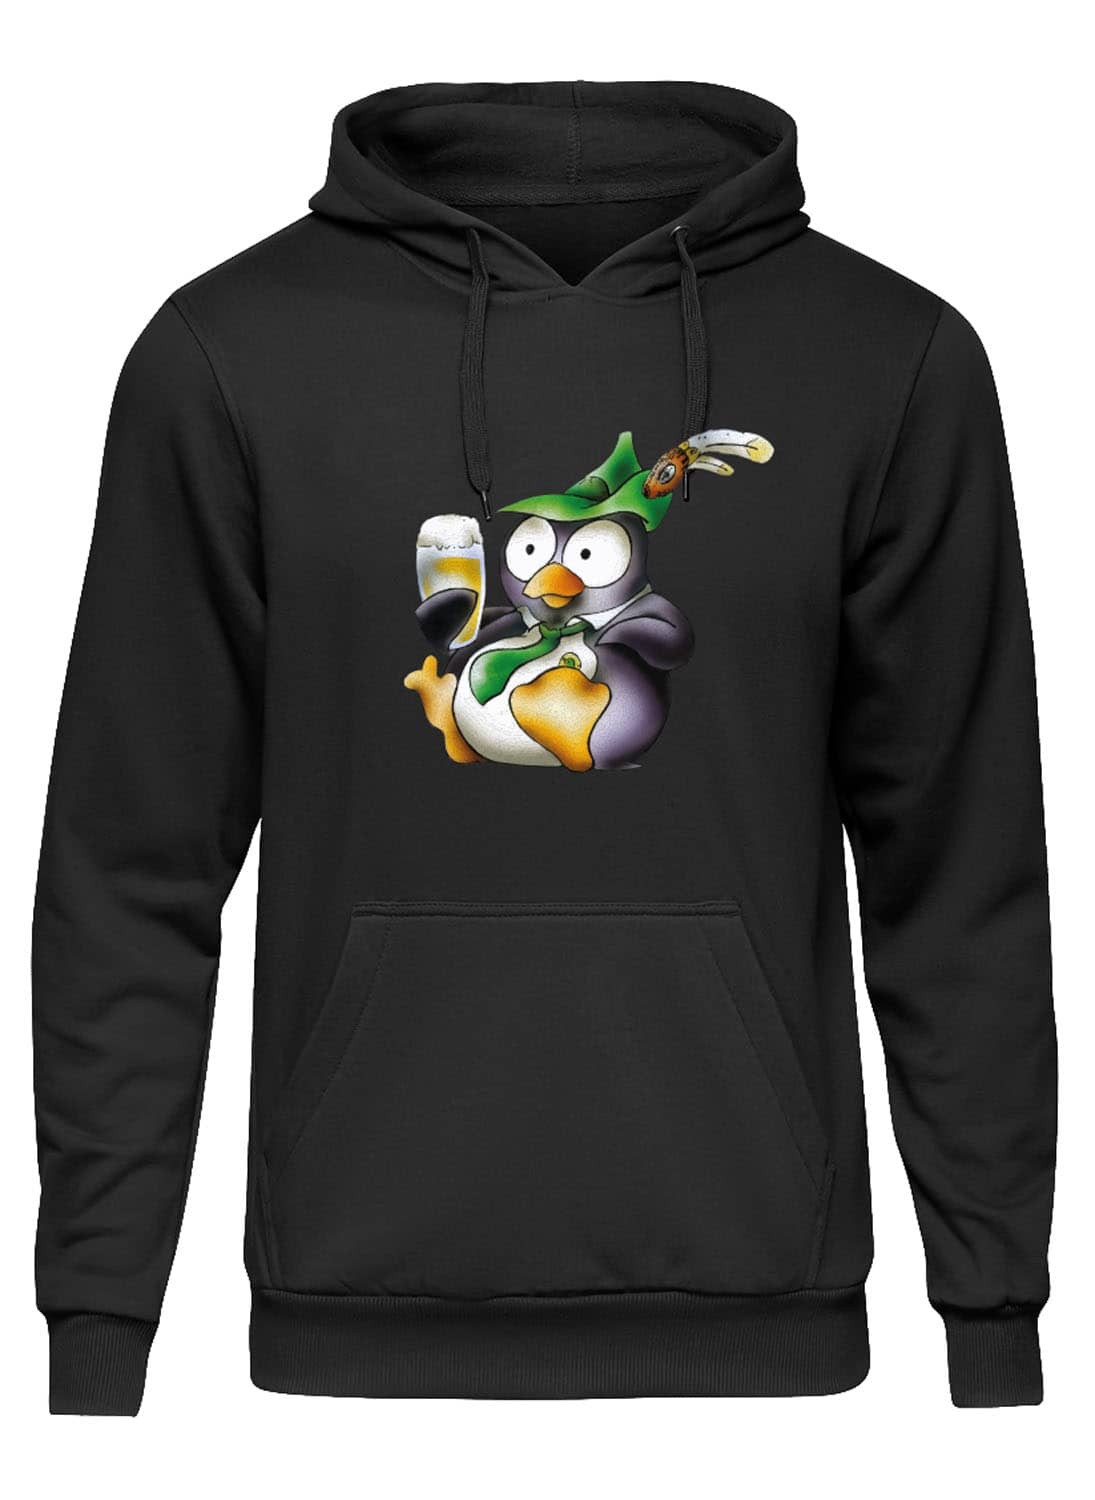 Hoodie "Pinguin Eddy" - Herren